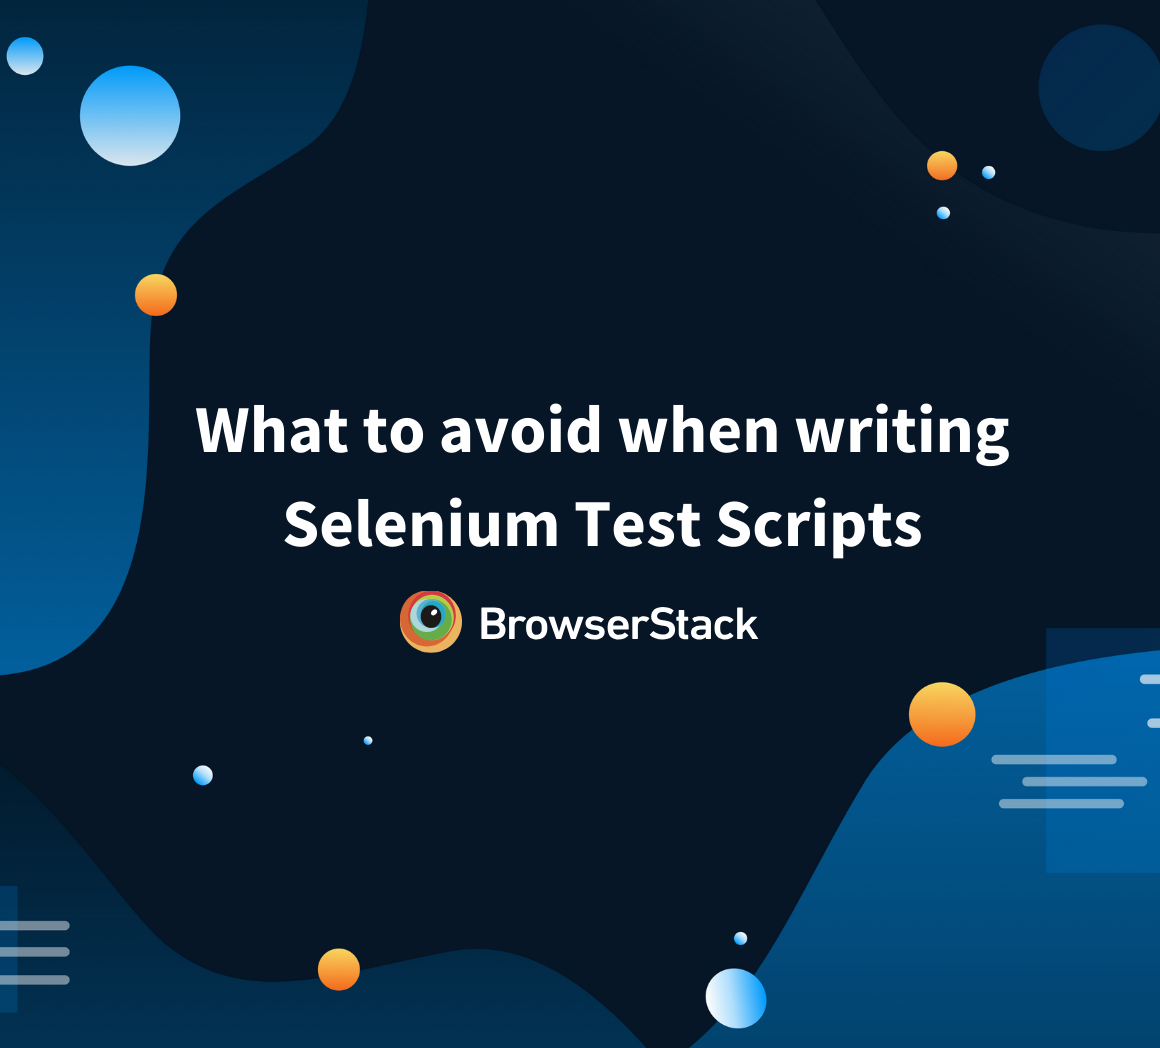 Things to avoid in Selenium test scripts